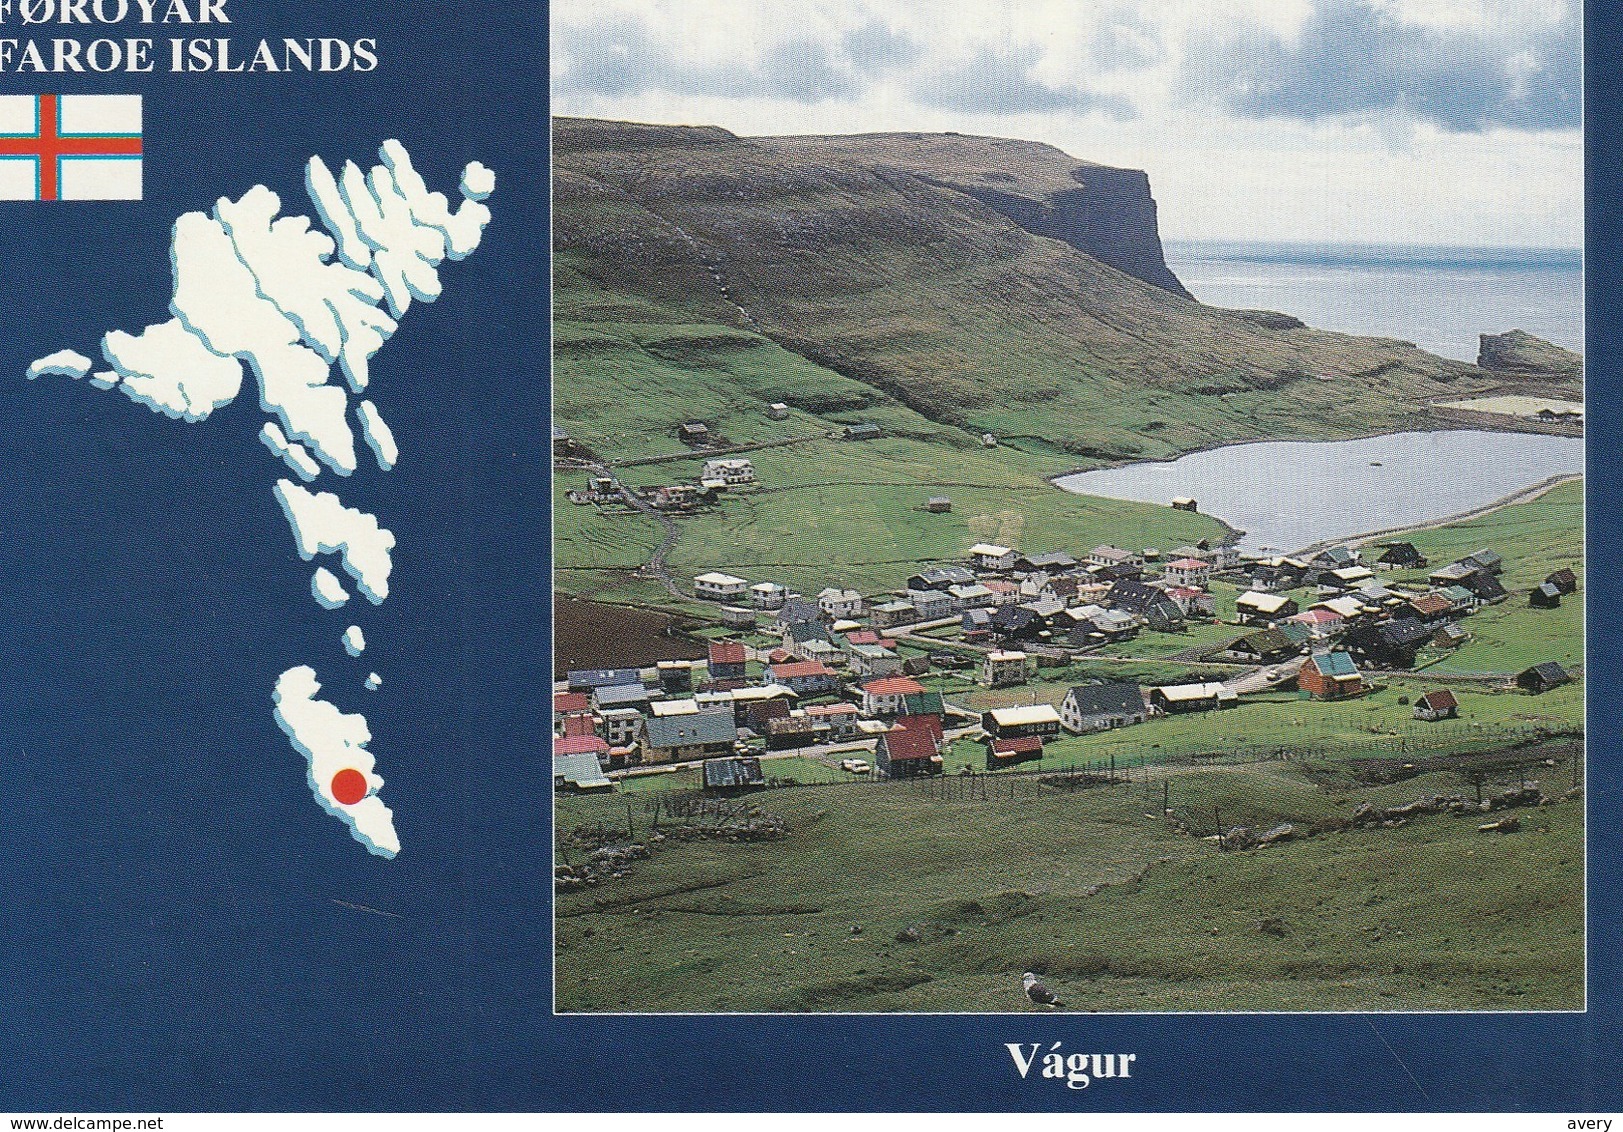 Foroyar Faroe Islands Vagur - Faeröer